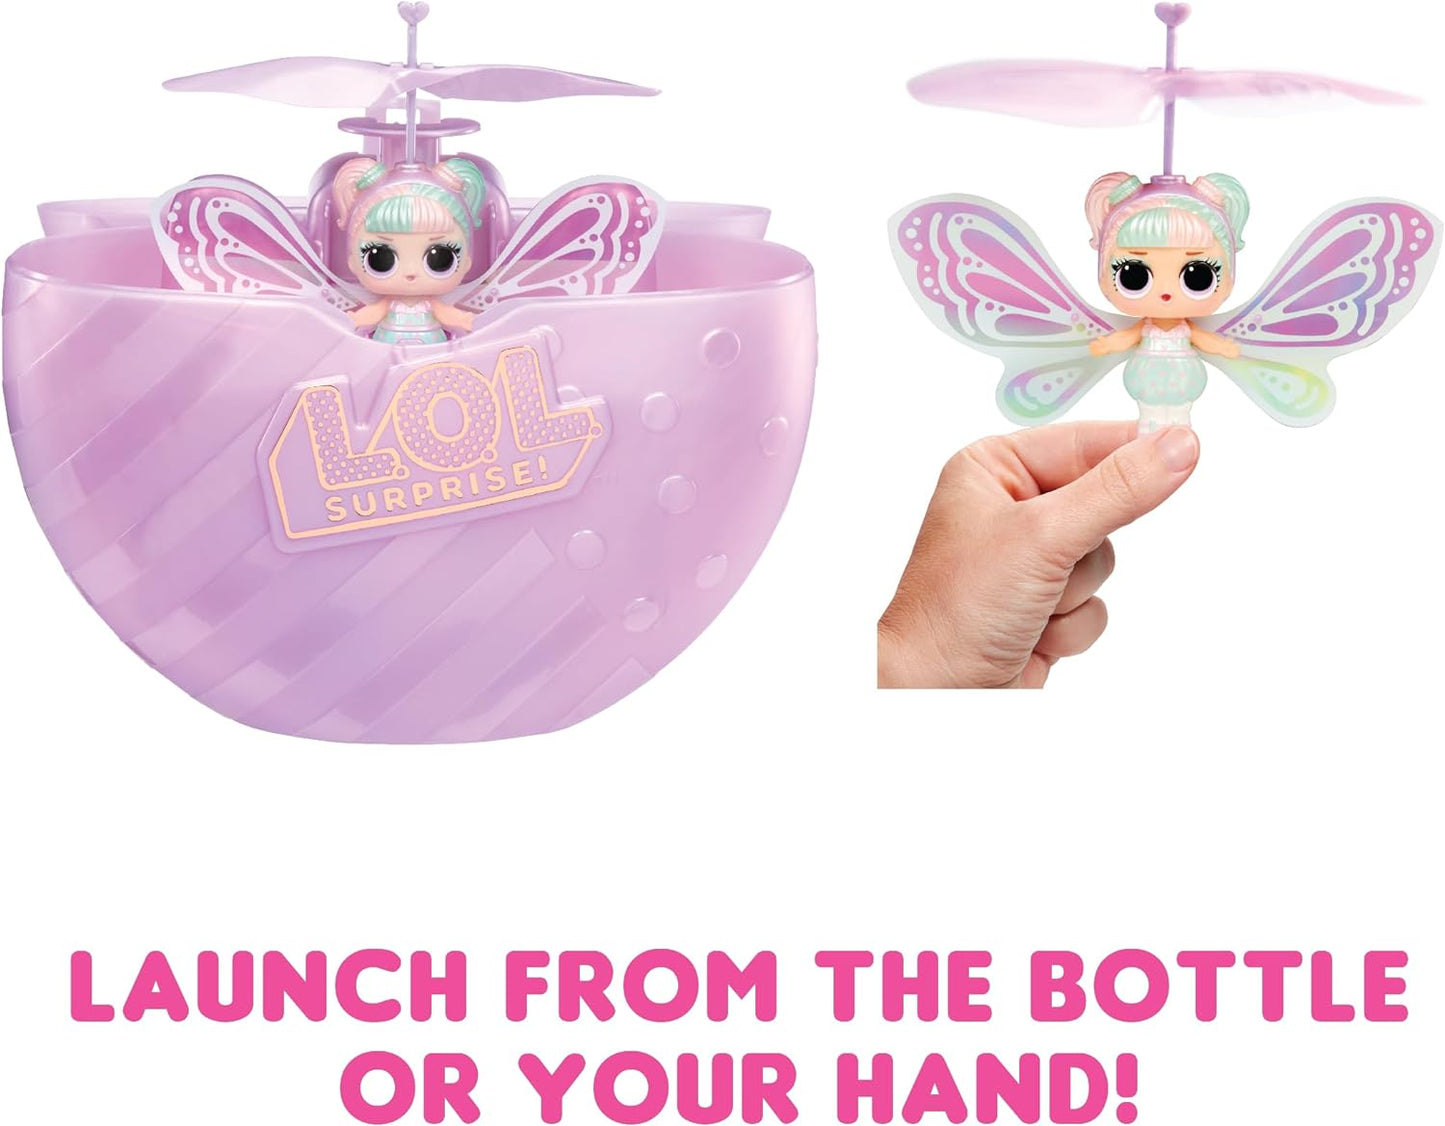 LOL Surprise Magic Flyers - Sky Starling - Boneca voadora guiada à mão - Boneca colecionável com garrafa de toque Unboxing - Ótimo para meninas com mais de 6 anos